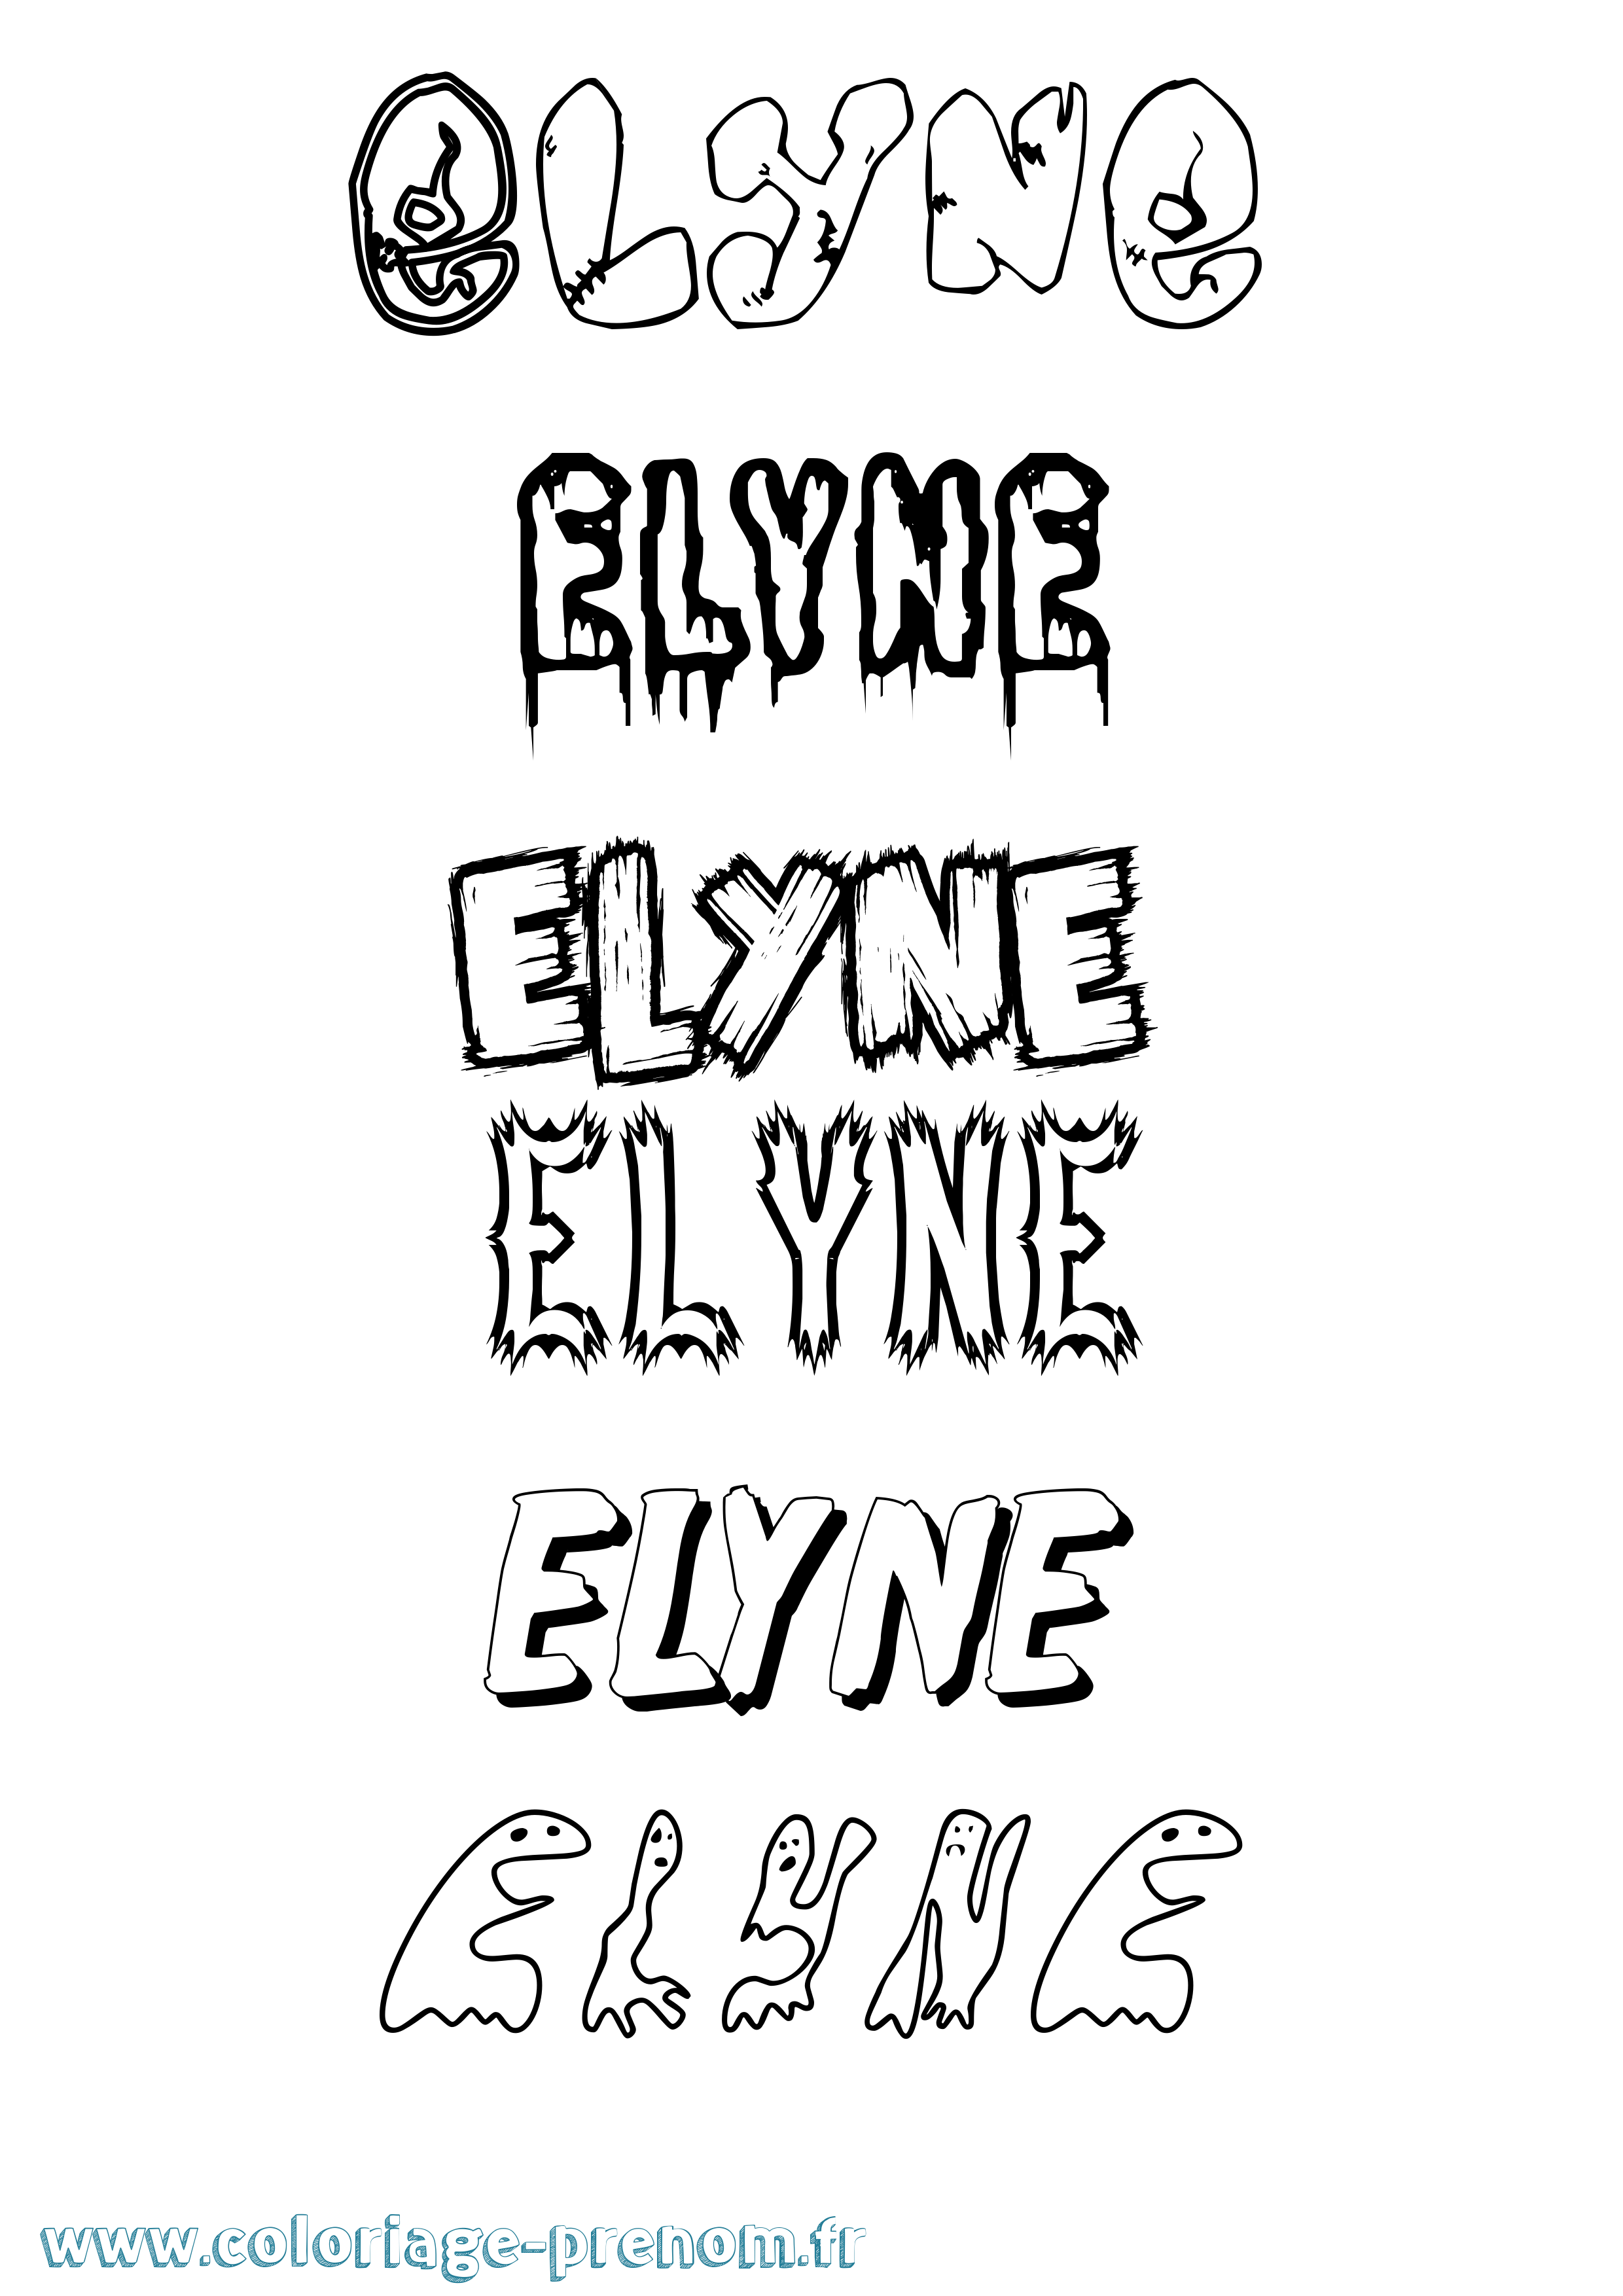 Coloriage prénom Elyne Frisson